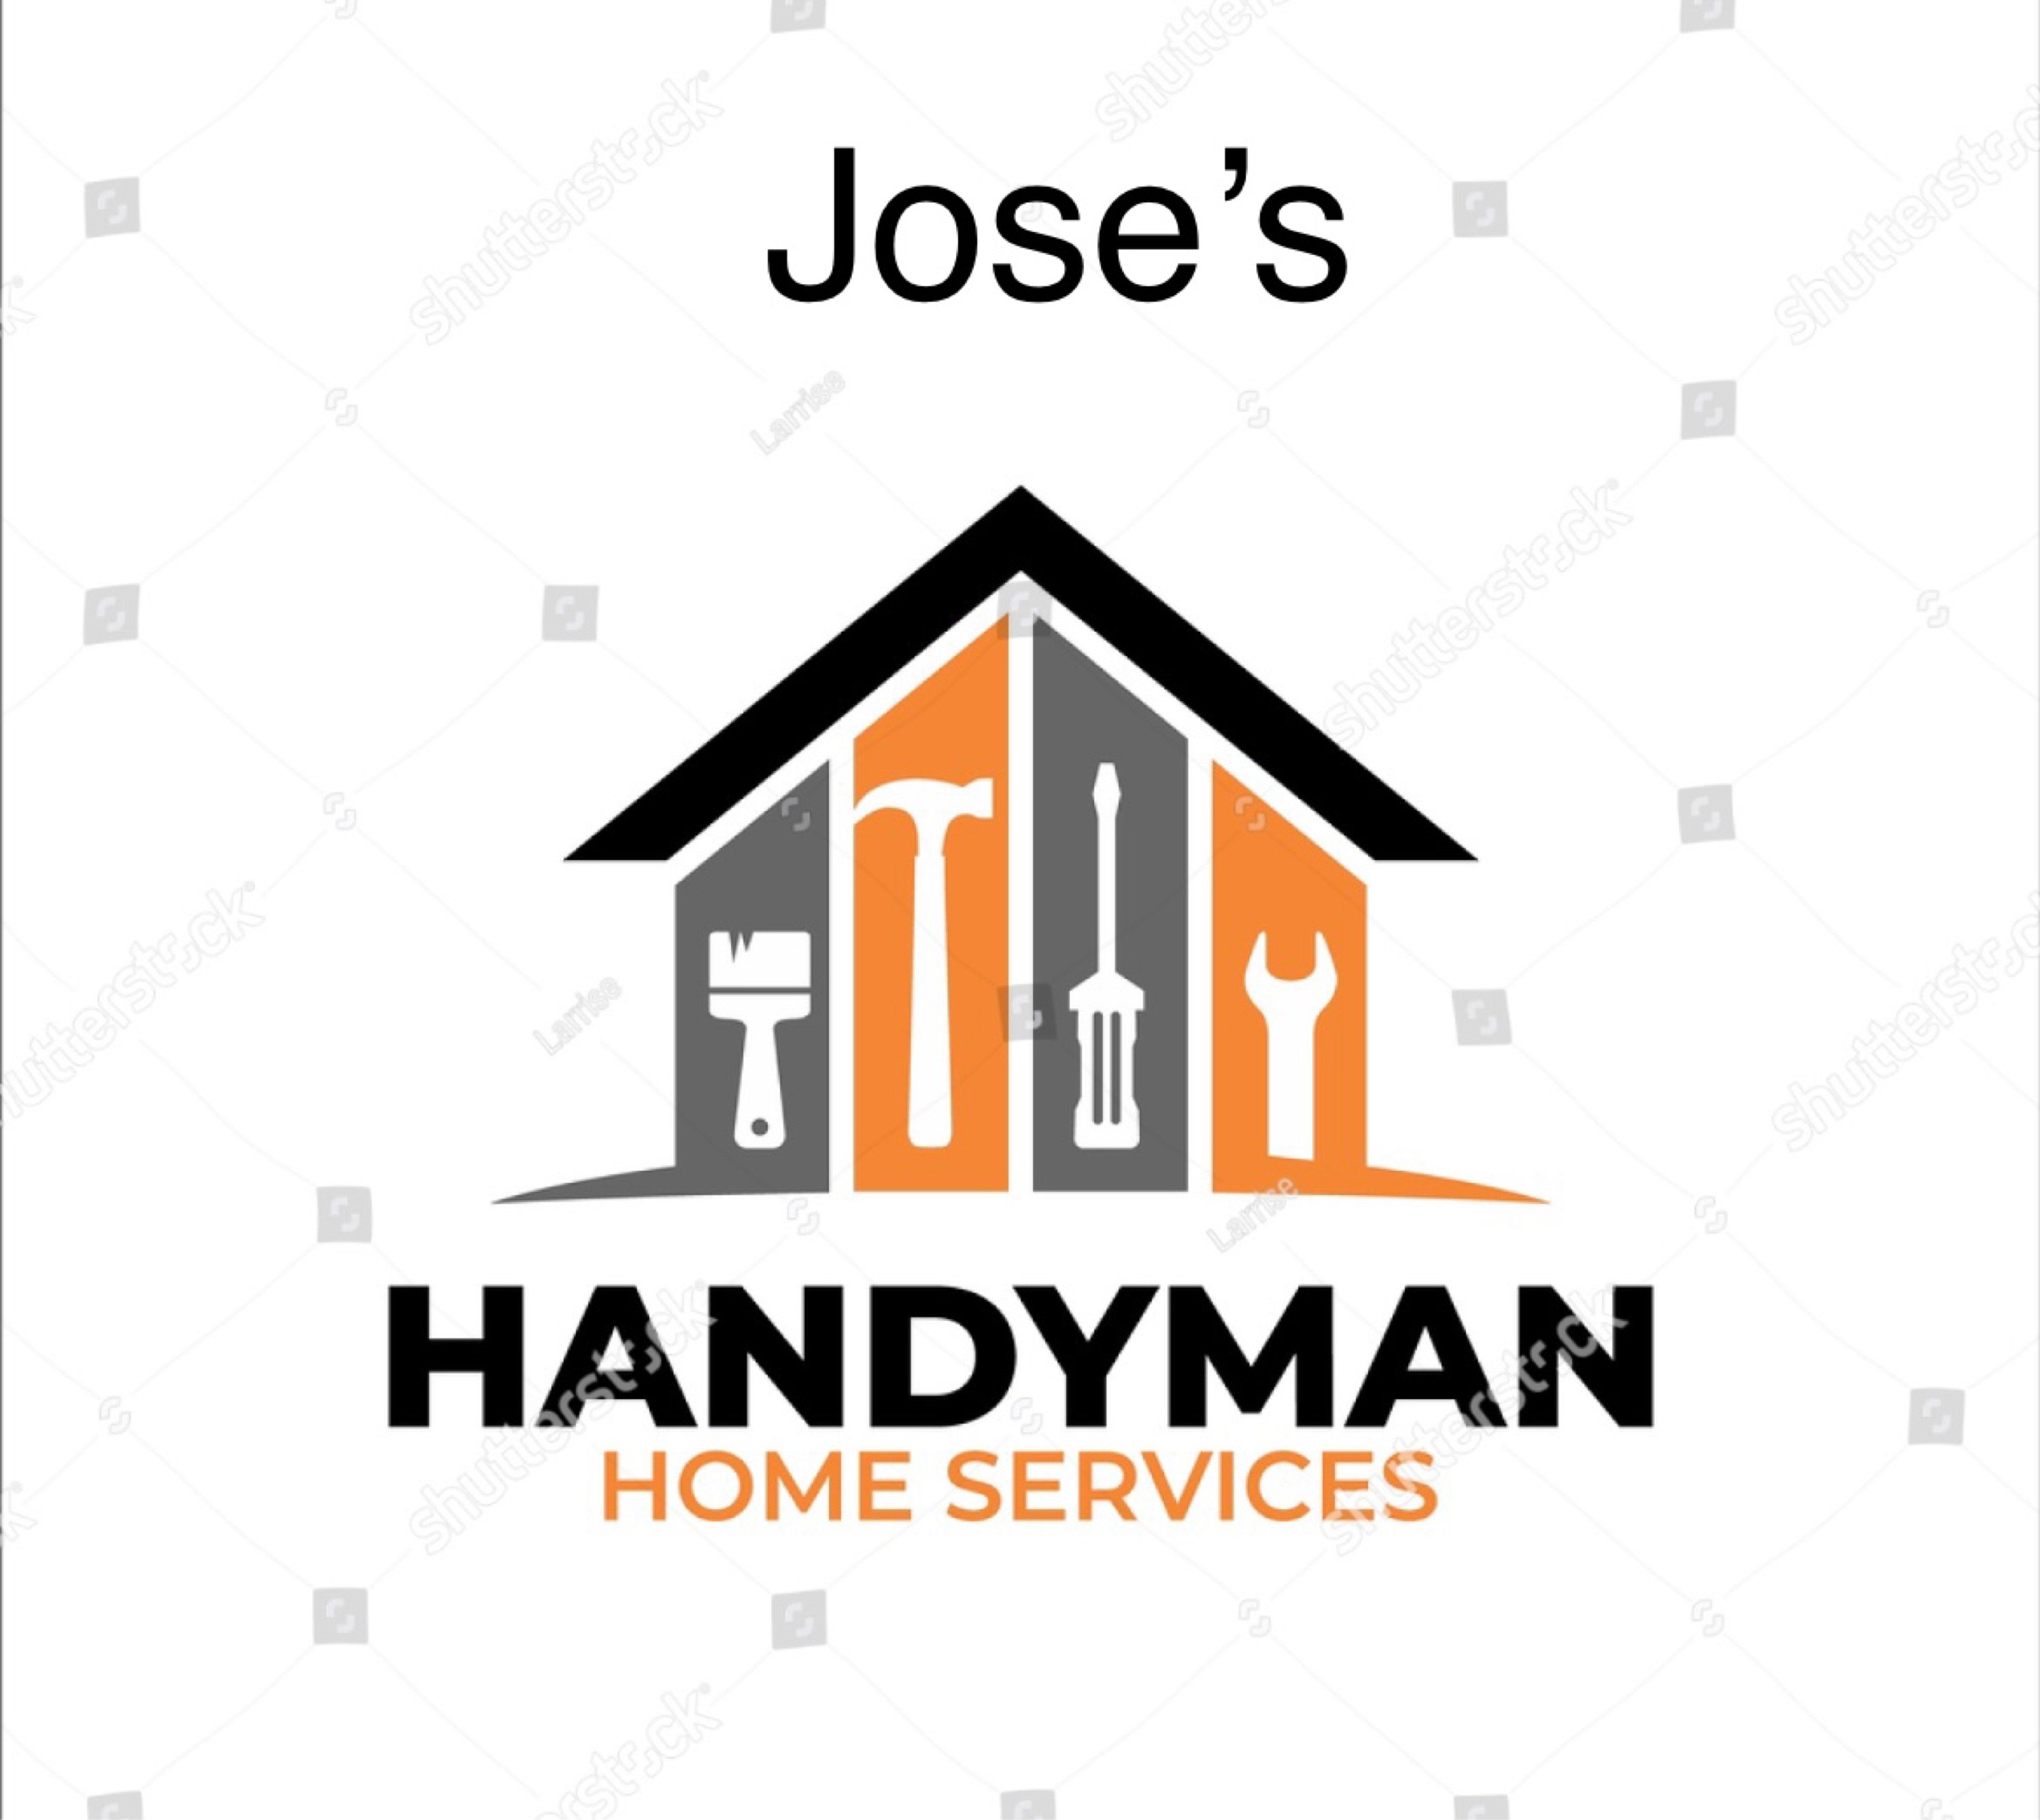 Jose Handyman Services - Unlicensed Contractor Logo